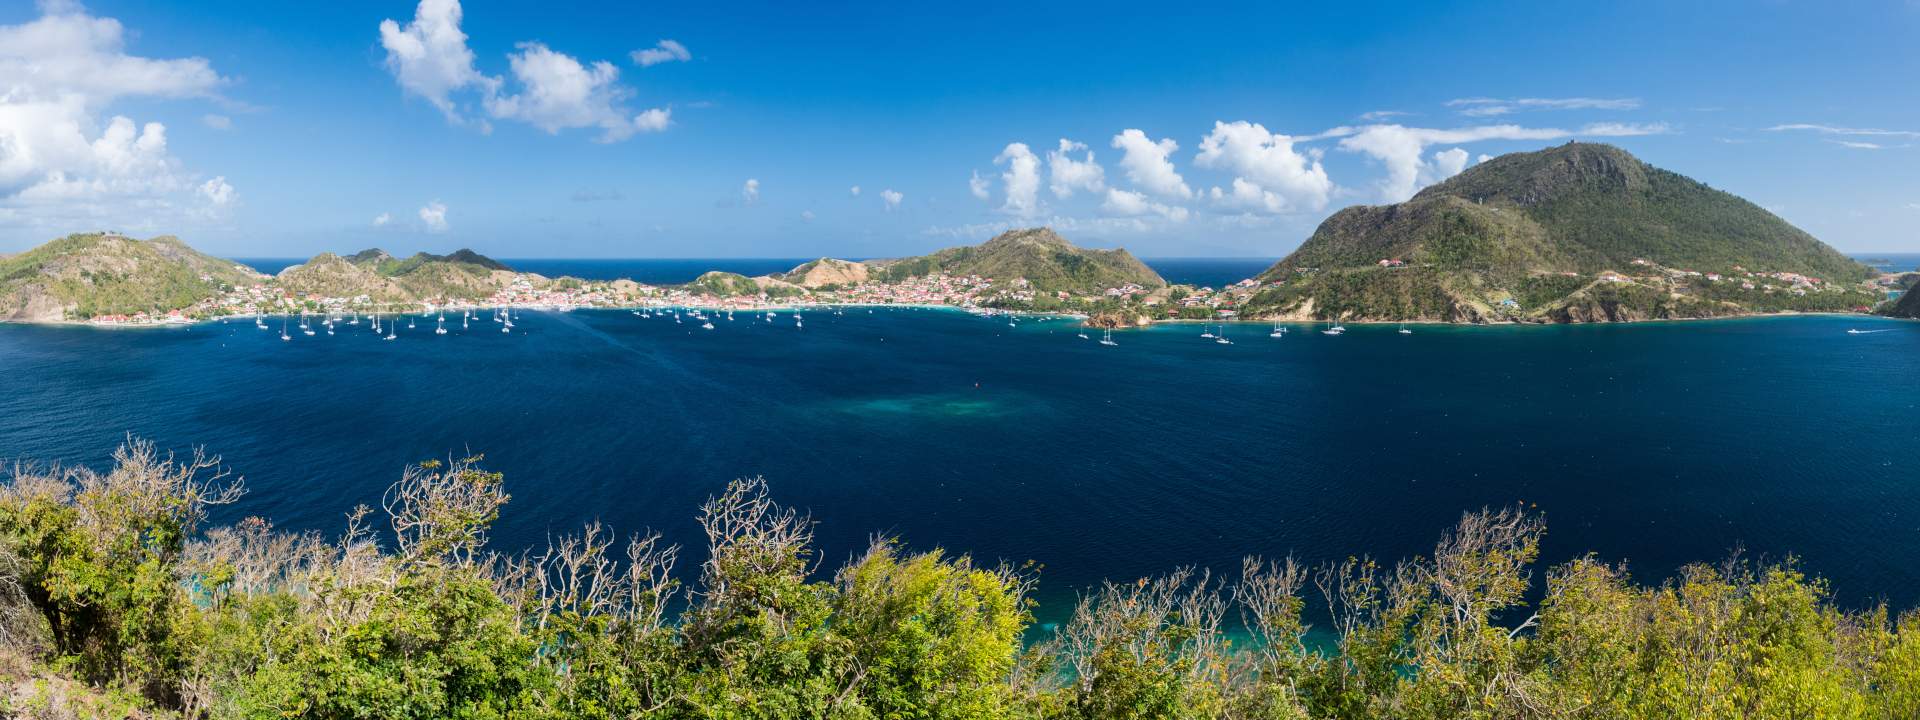 Entdecken Sie die schönsten Inseln der Antillen auf einer Saba 50 mit Crew